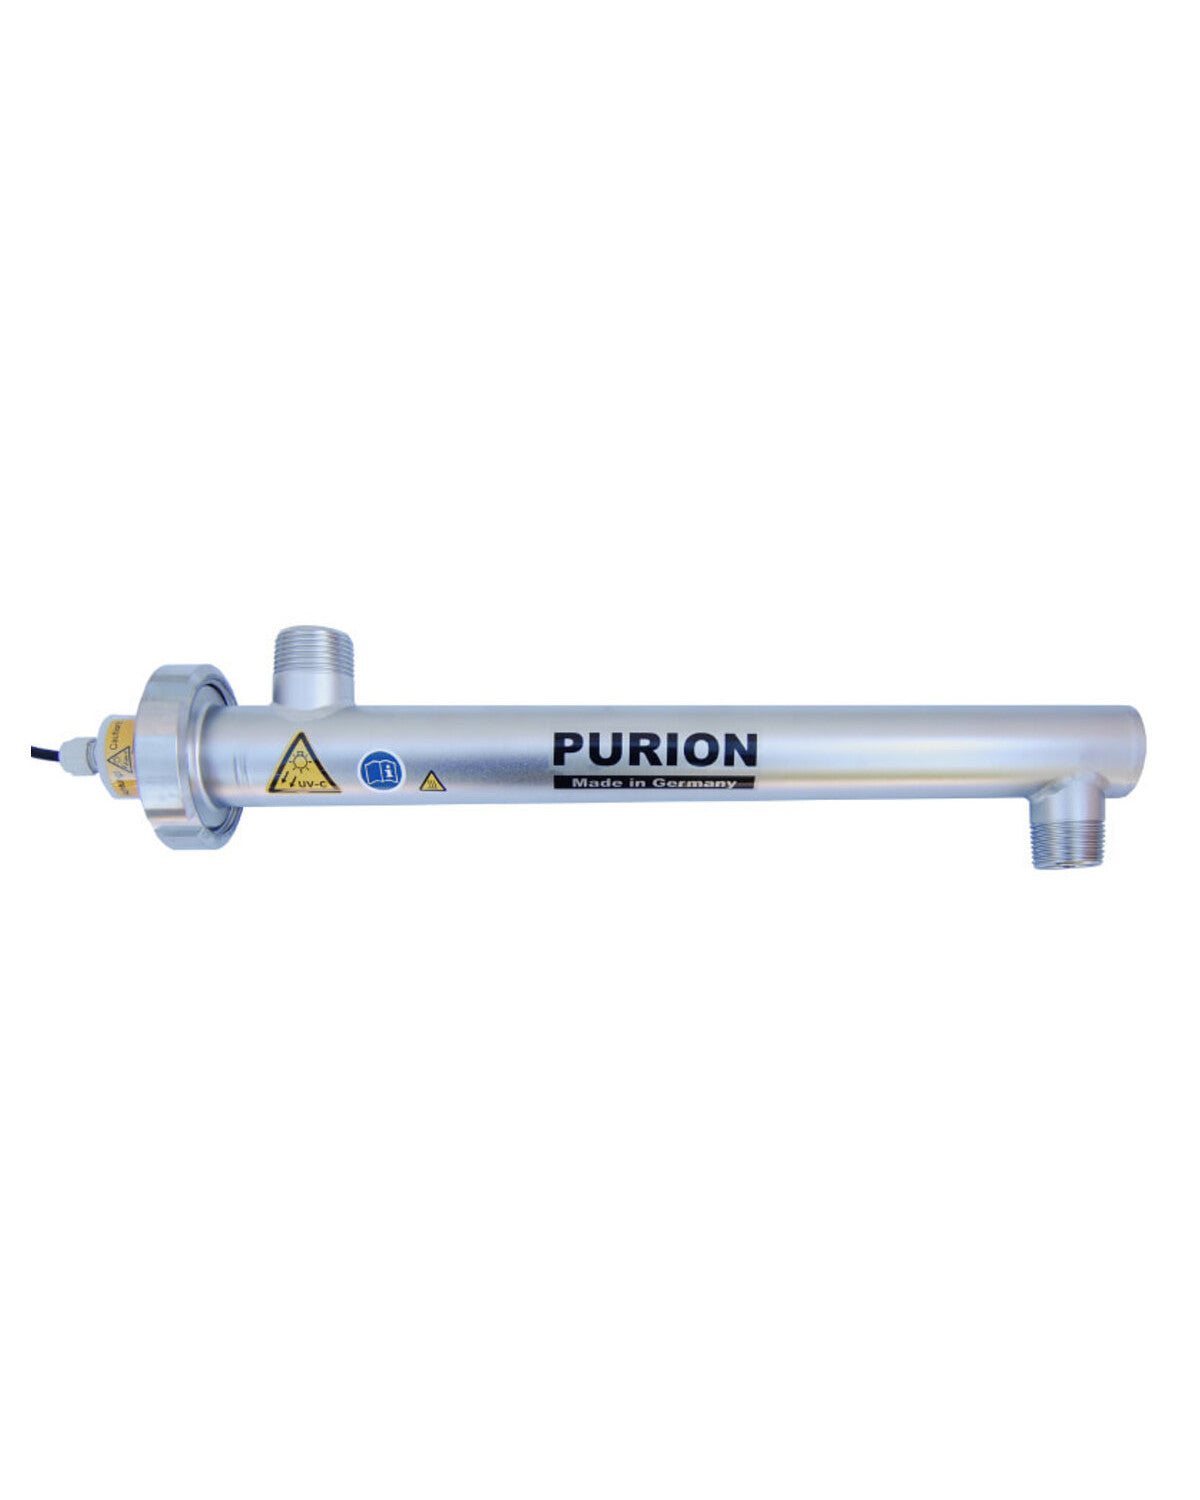 PURION 1000 12/24 V DC Basic purion purion purion purion purion Purion GmbH der Purion GmbH.